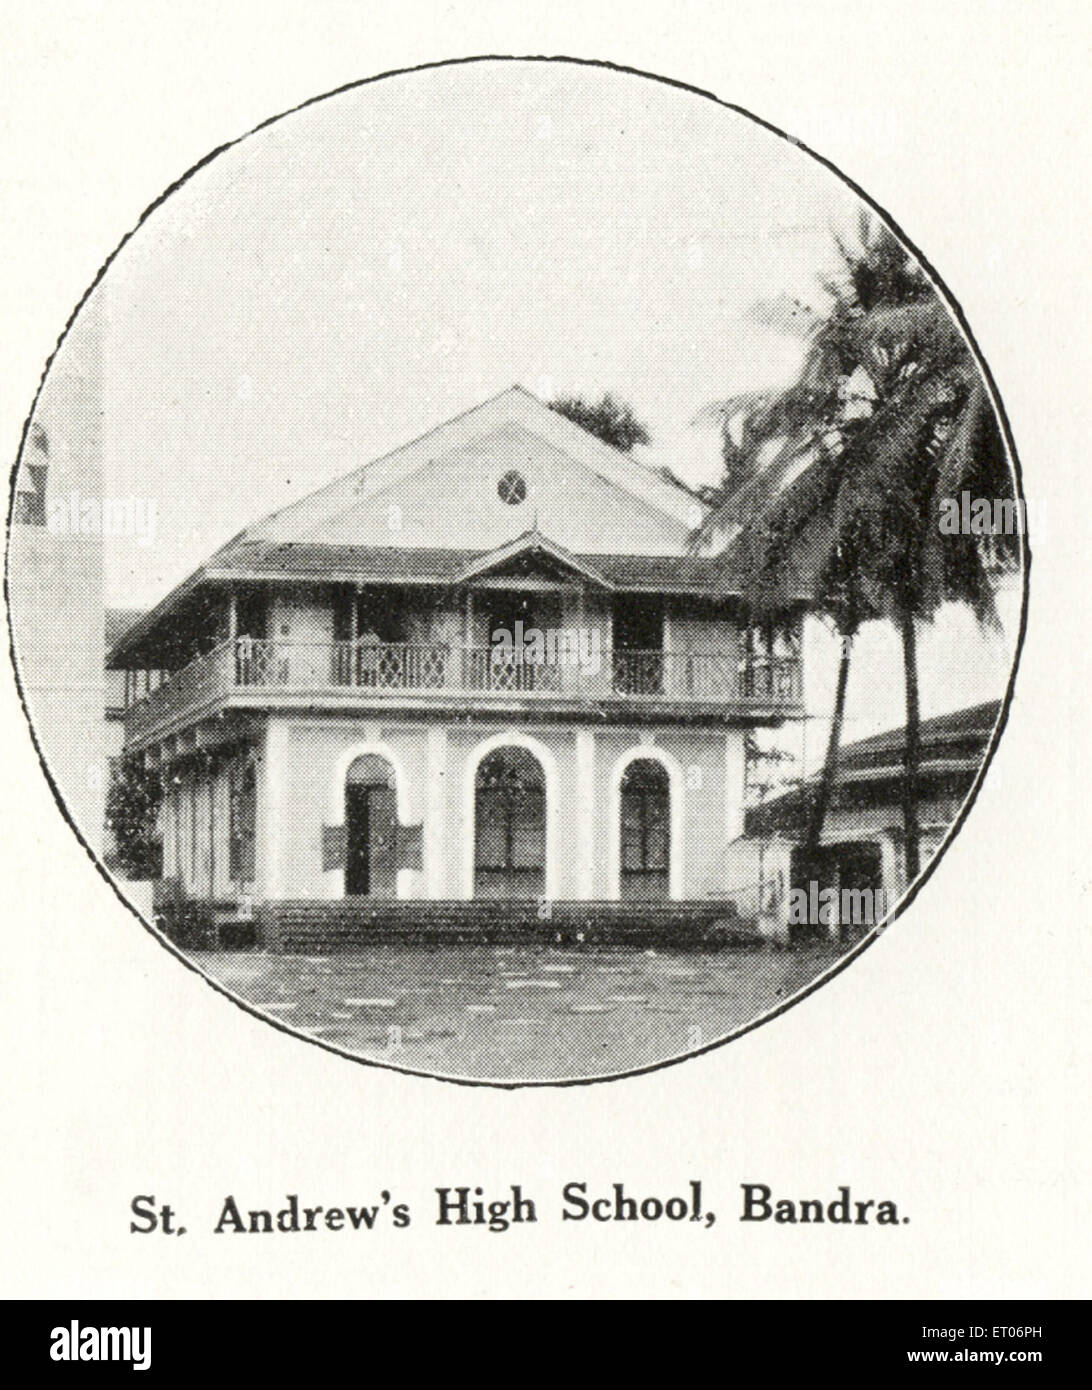 Communauté catholique, St Andrew's High School, Bandra, Bombay, Mumbai, Maharashtra, Inde, Asie, ancienne image du XIXe siècle Banque D'Images